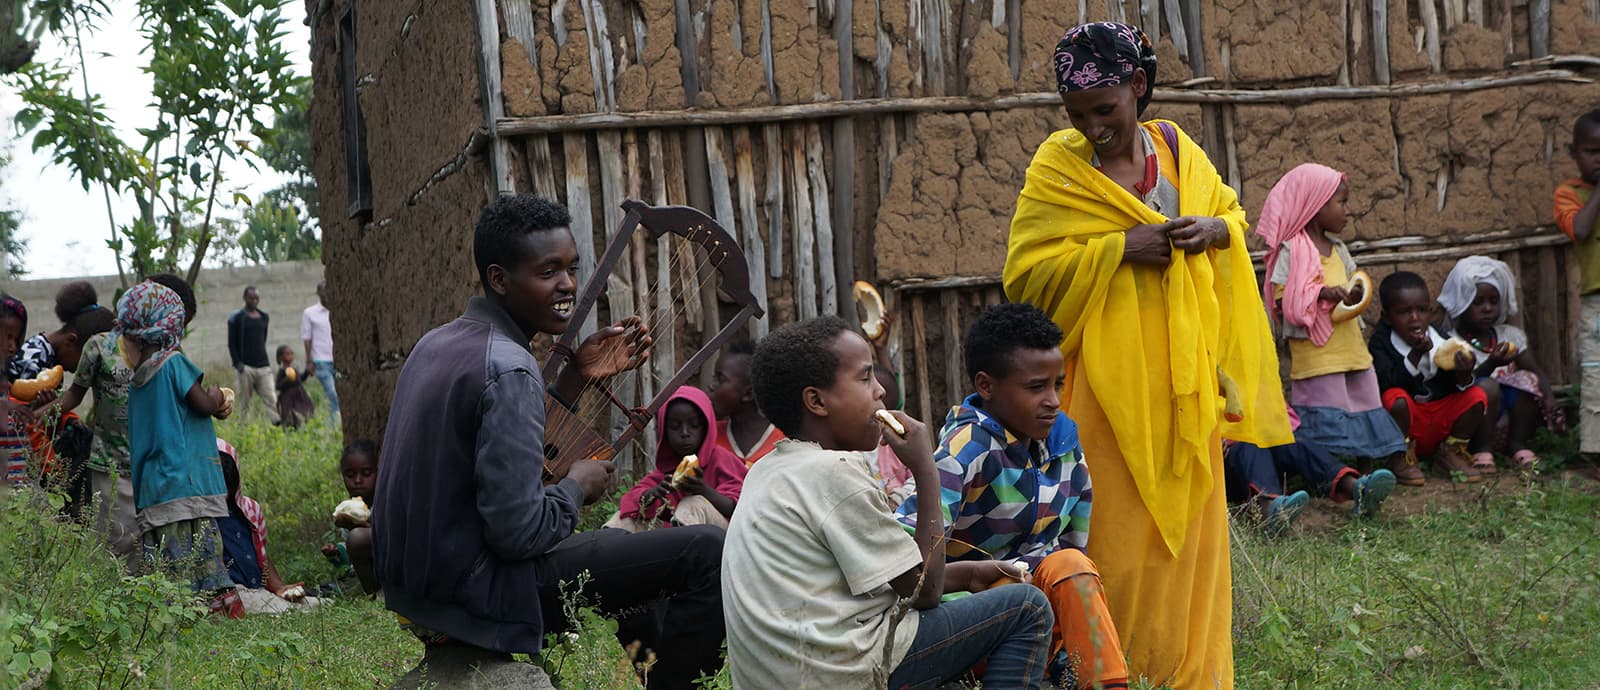 Jungendliche aus Äthiopien machen Musik